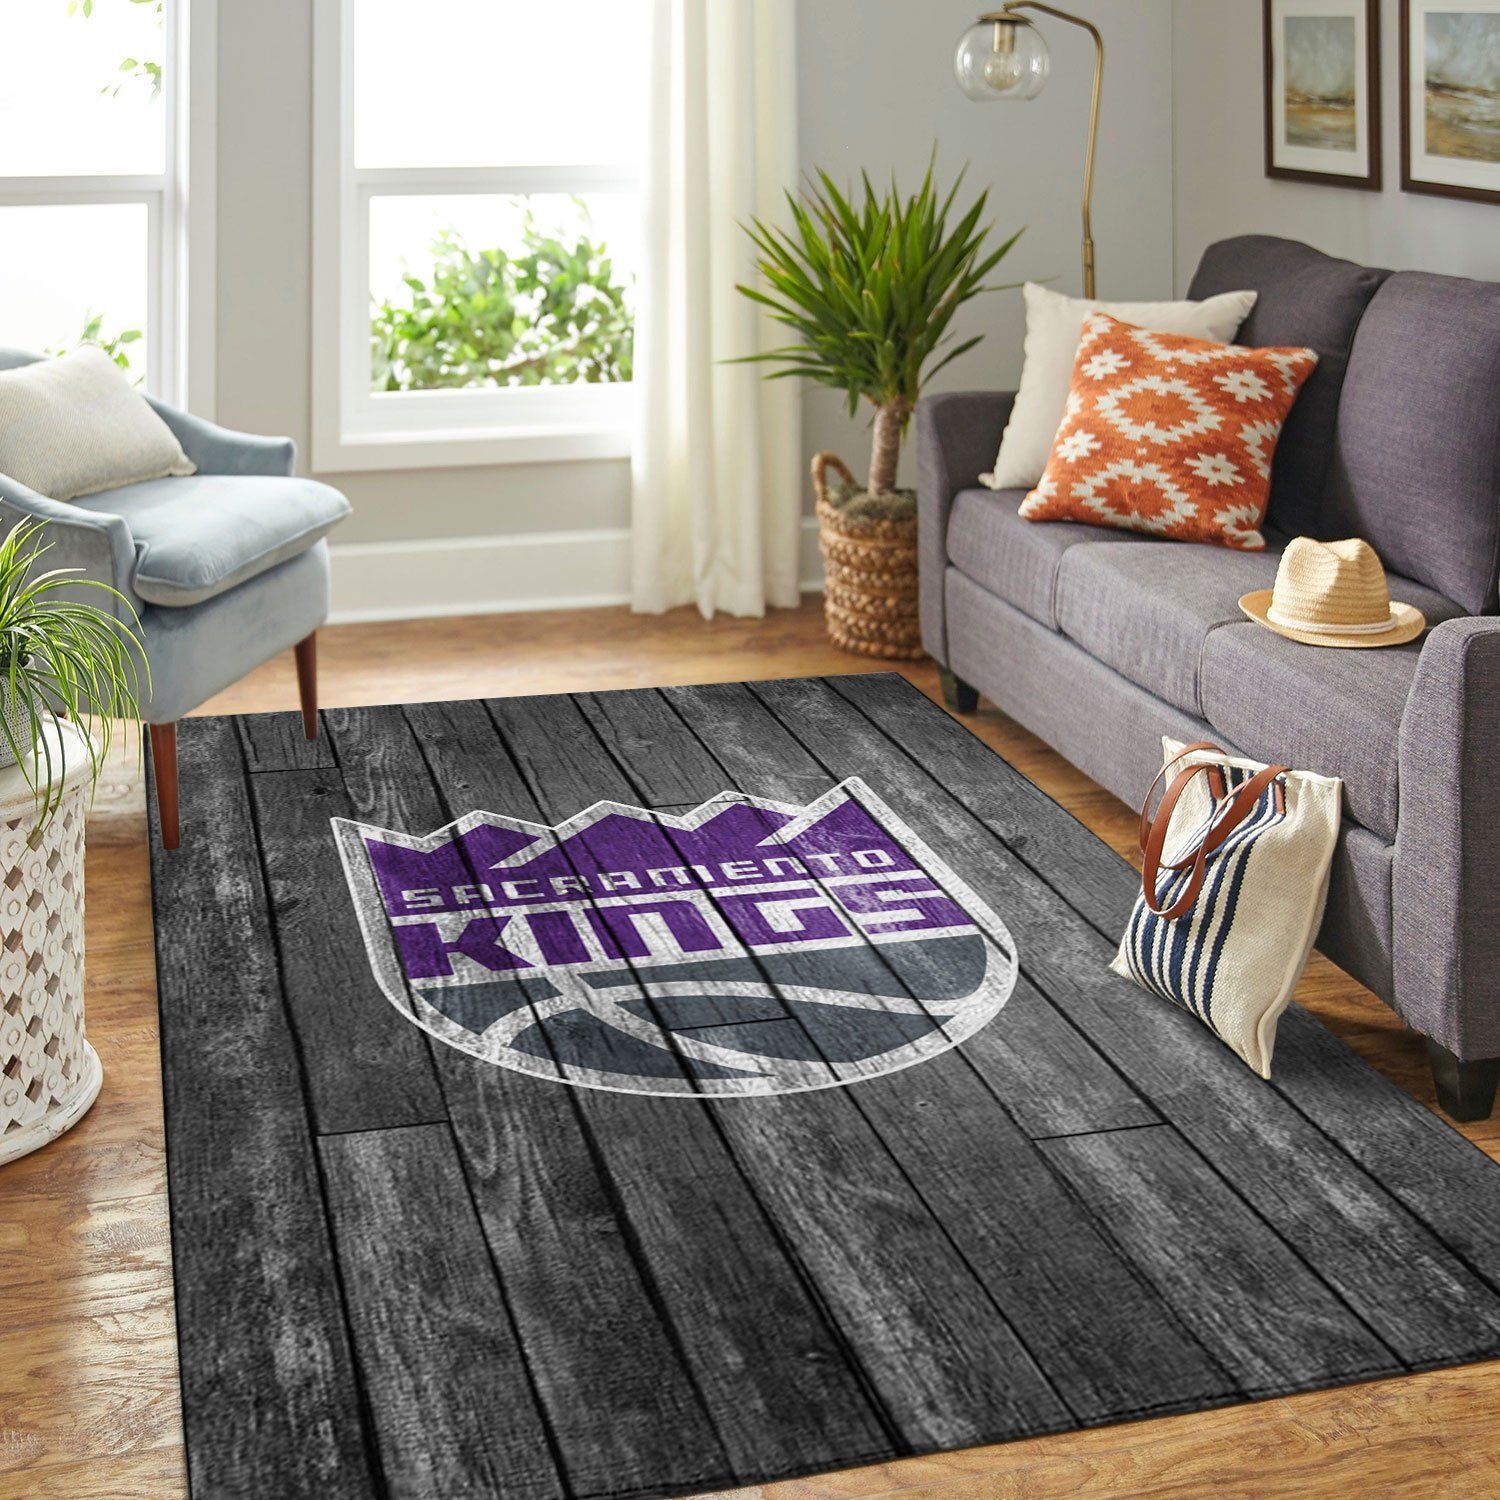 Sacramento Kings Nba Team Logo Grey Wooden Style Nice Gift Home Decor Rectangle Area Rug - Indoor Outdoor Rugs